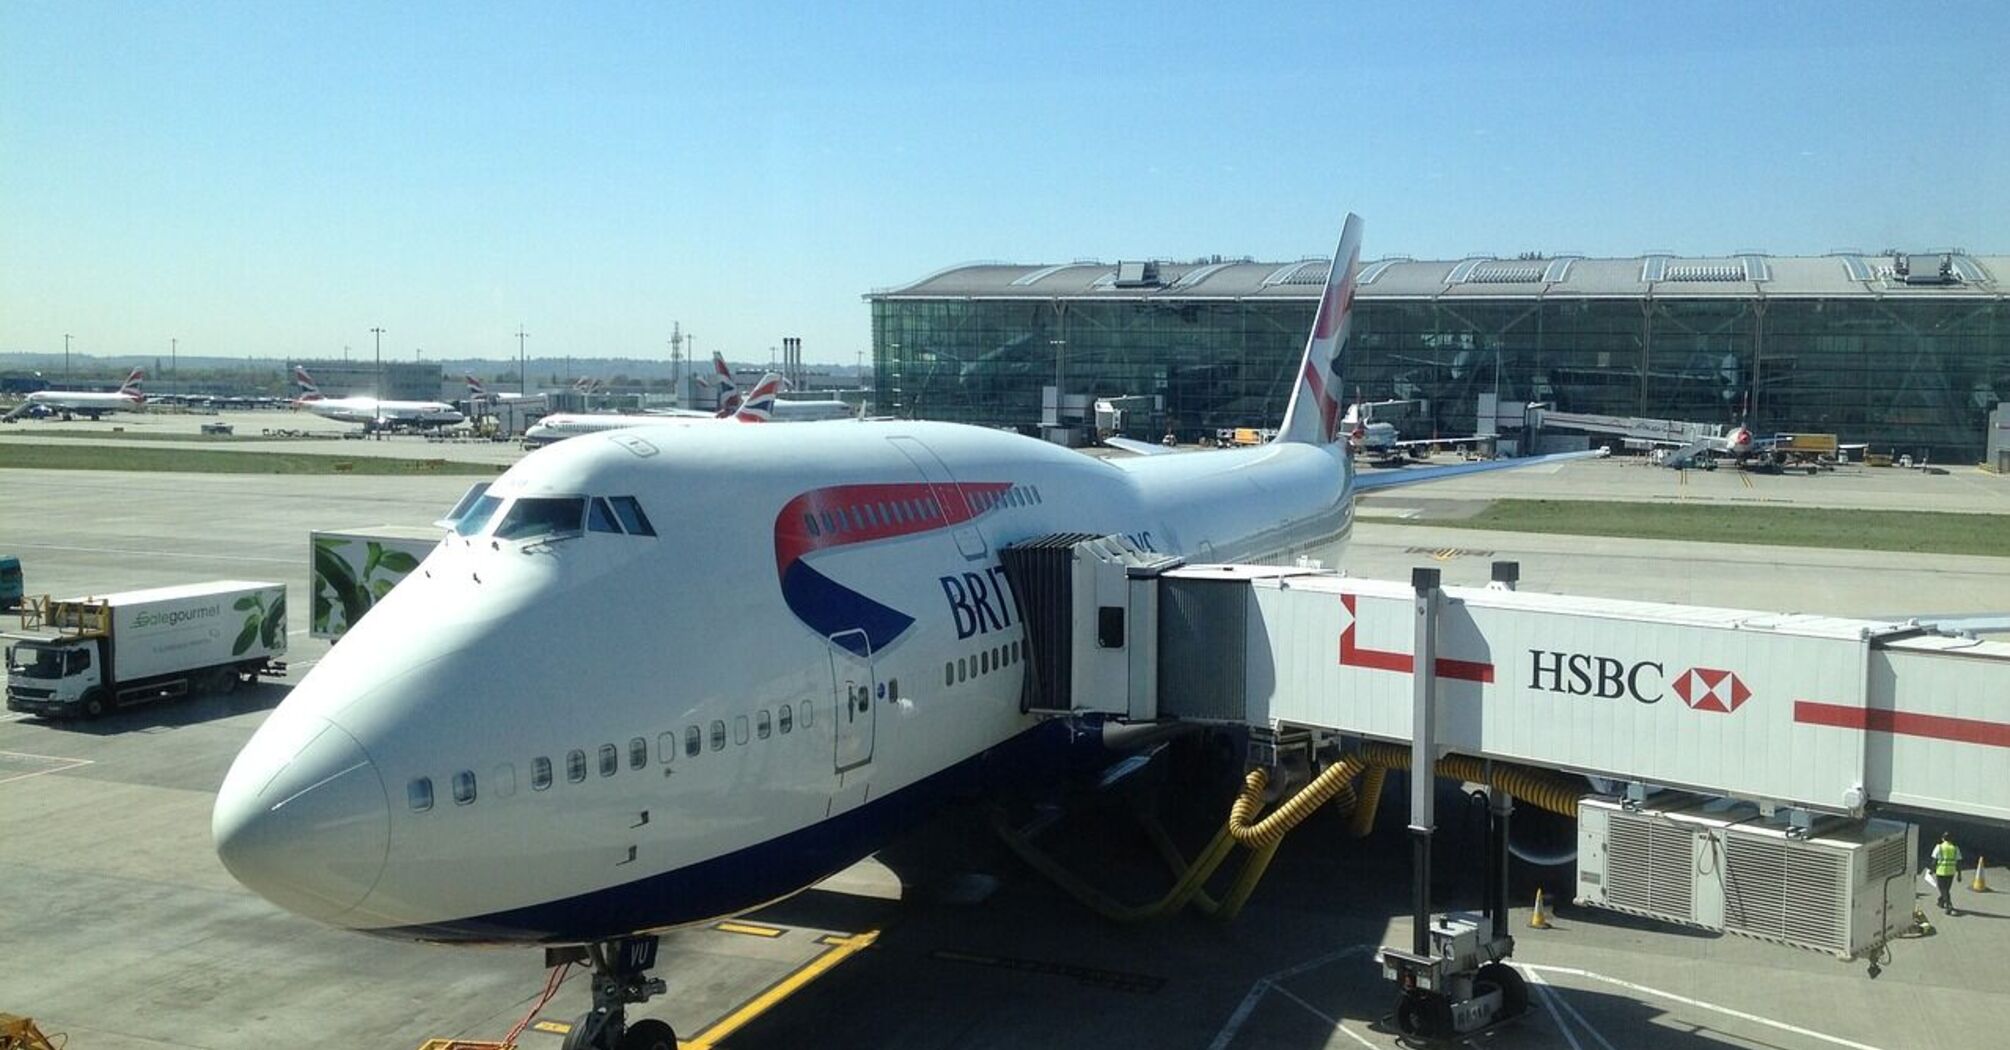 British Airways steward dies at Heathrow Airport before takeoff. Details